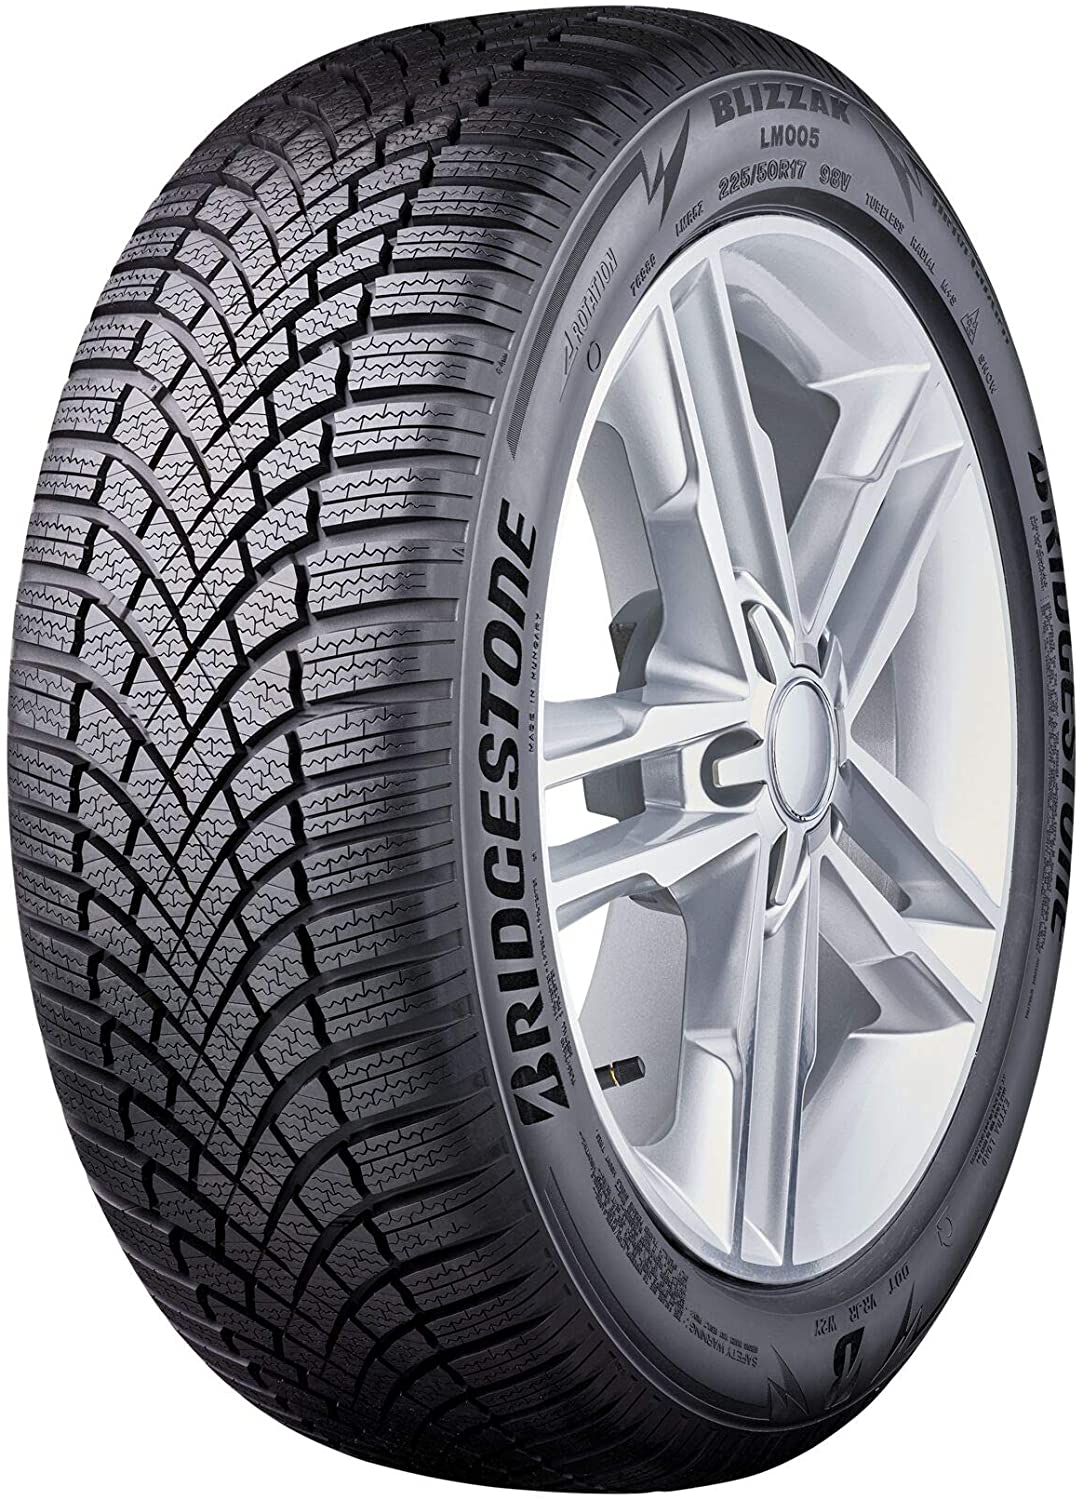 Bridgestone Blizzak - Tire and Tests LM005 Reviews